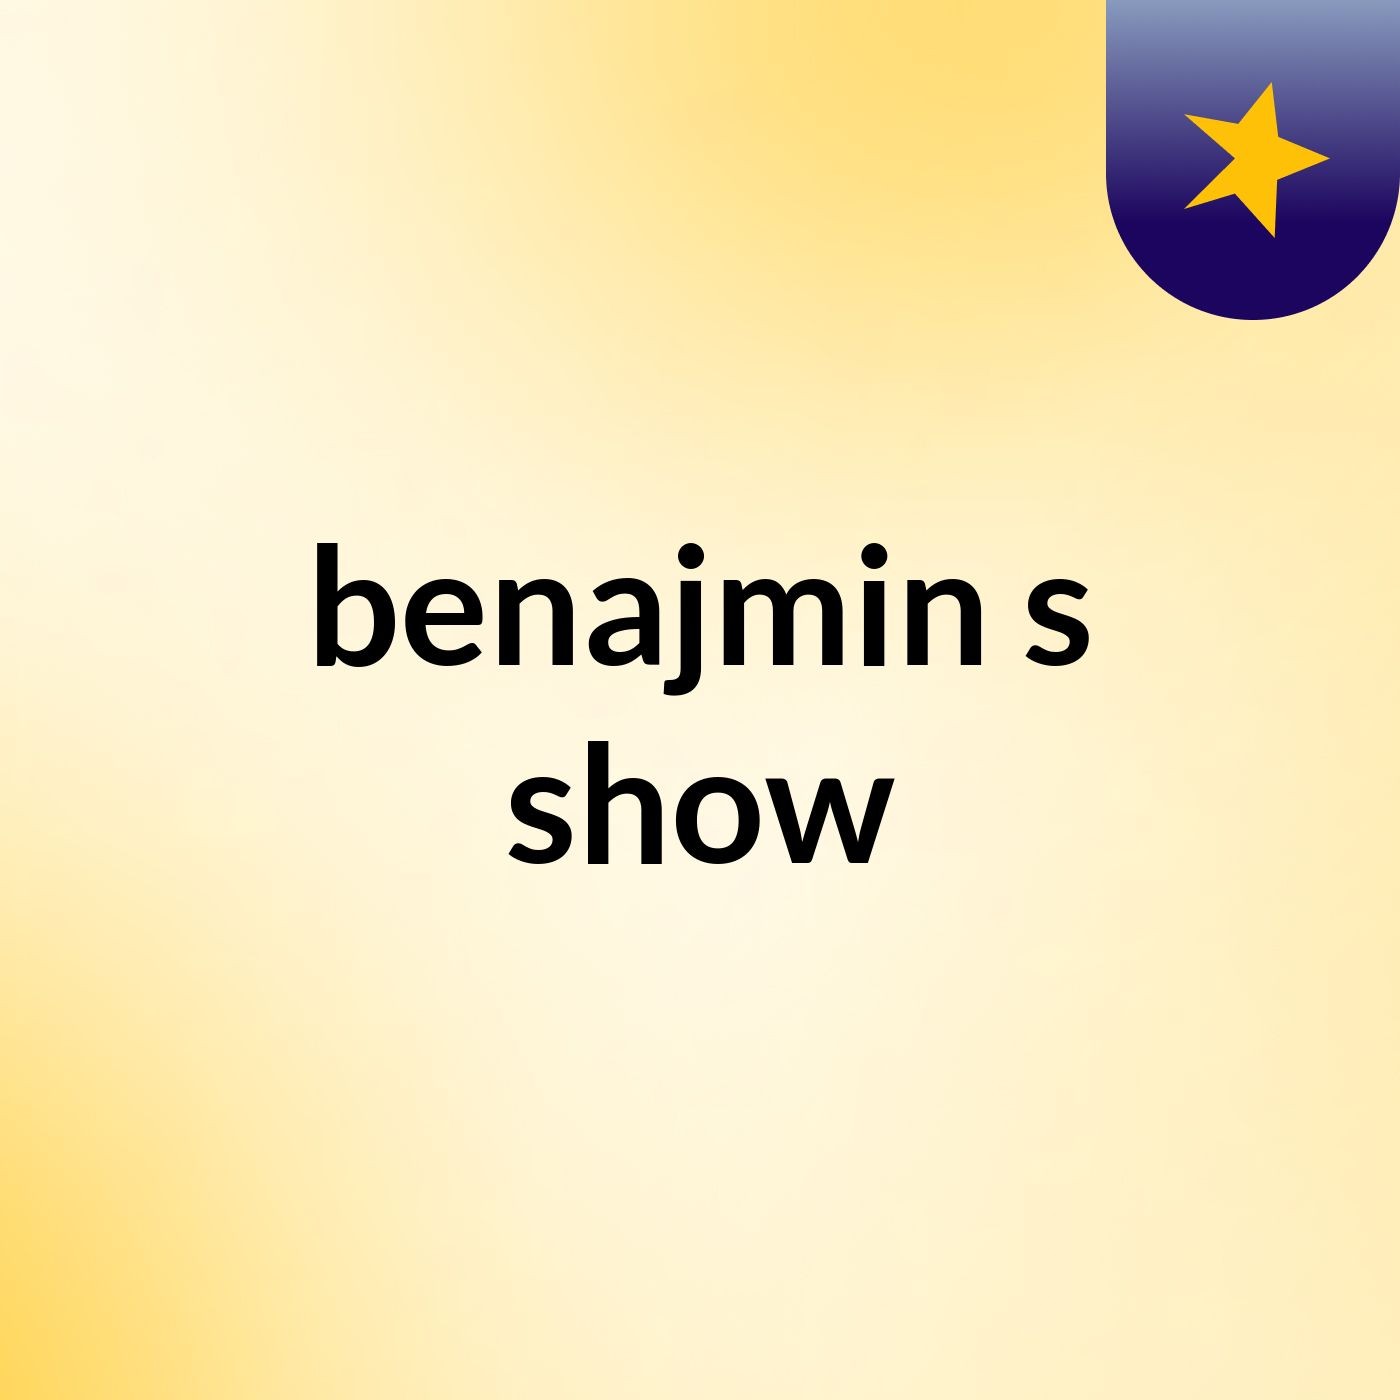 benajmin's show